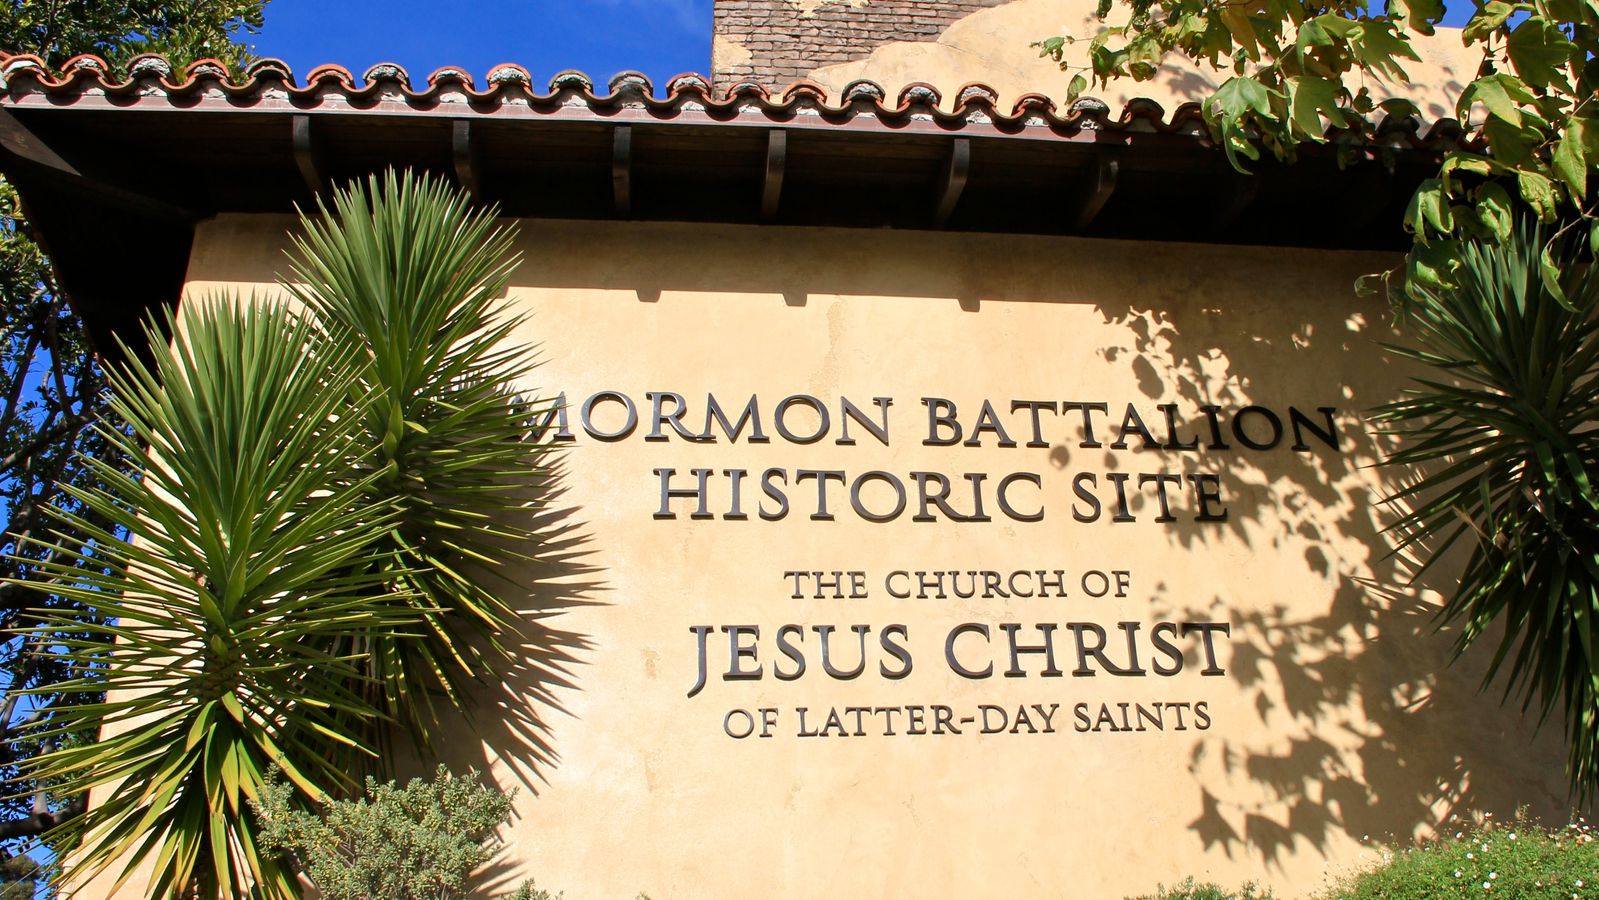 Mormon Battalion Historic Sites building